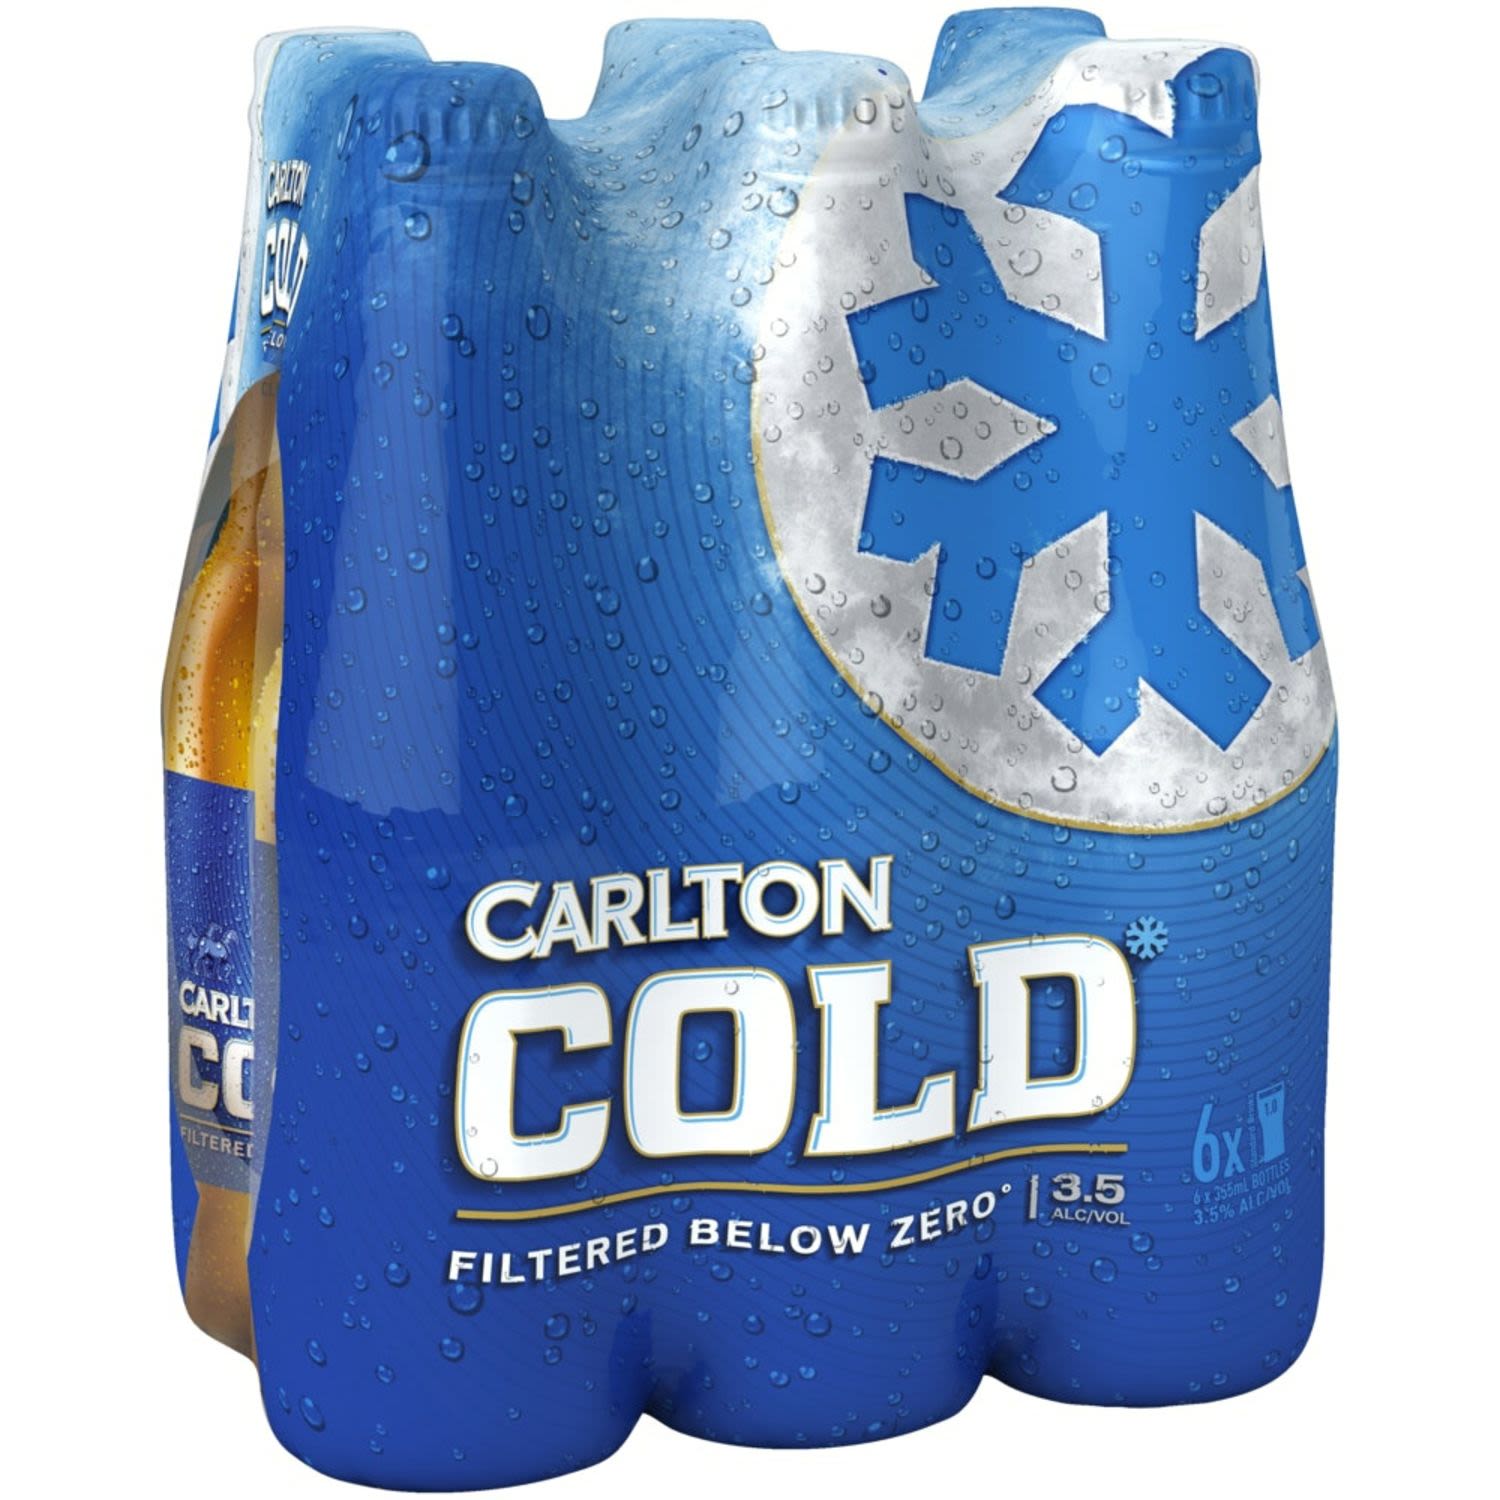 Carlton Cold Bottle 355mL 6 Pack